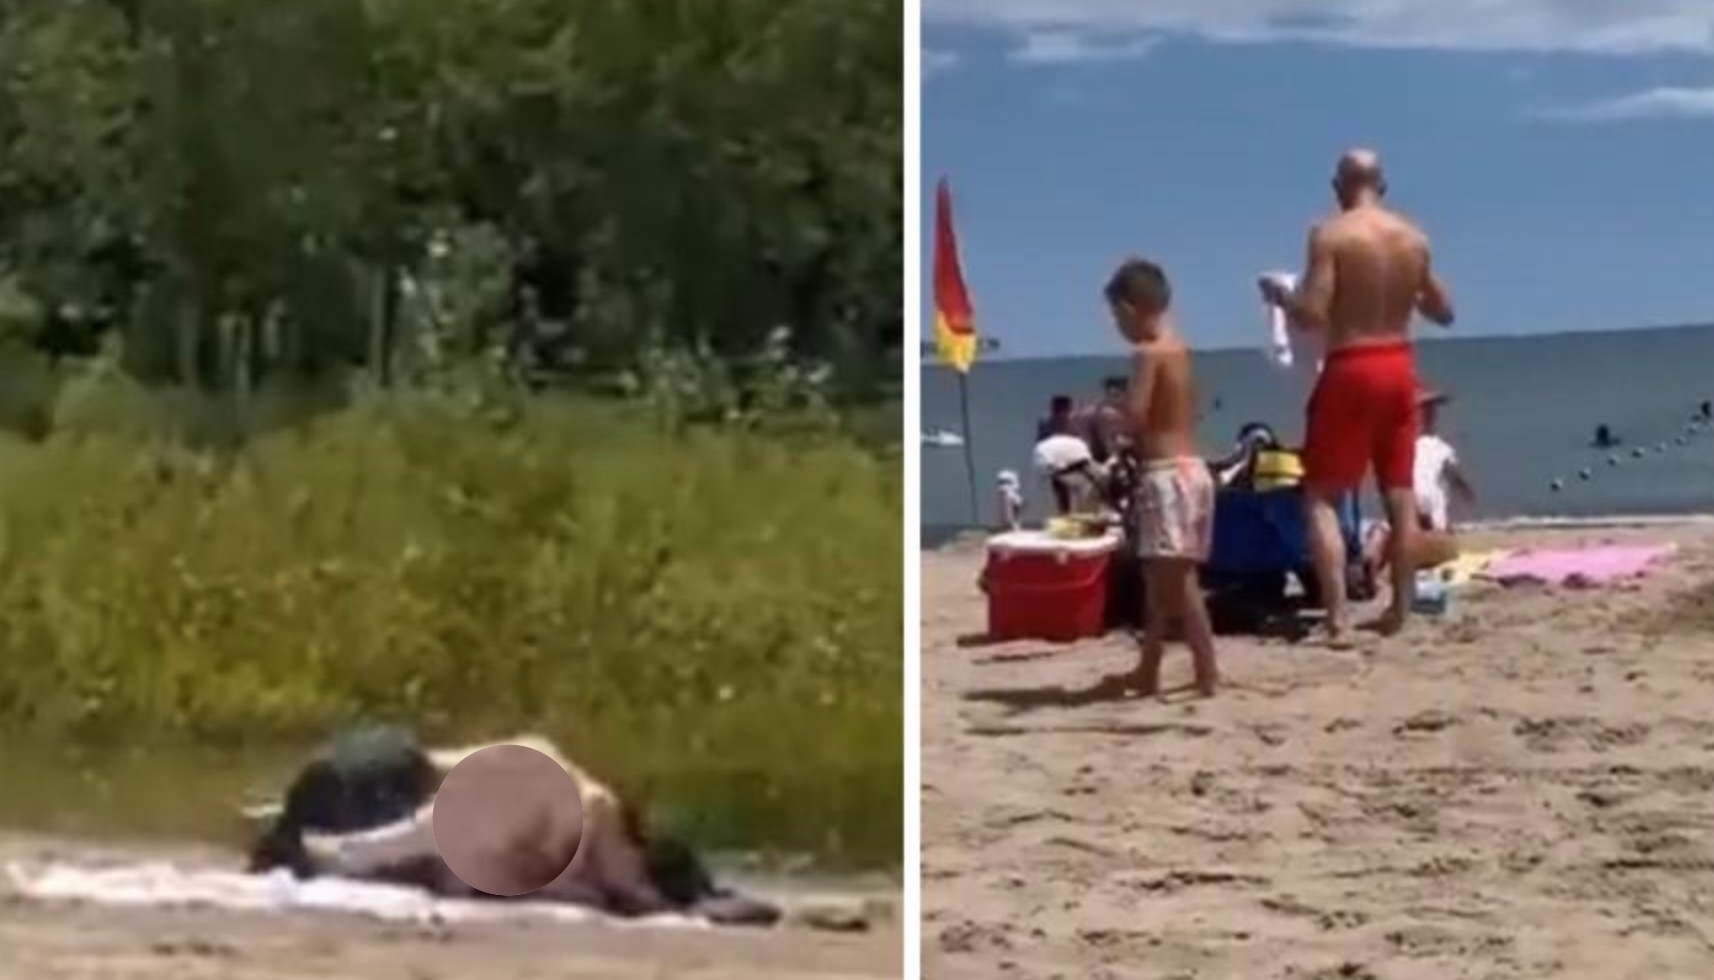 Beach porn videos